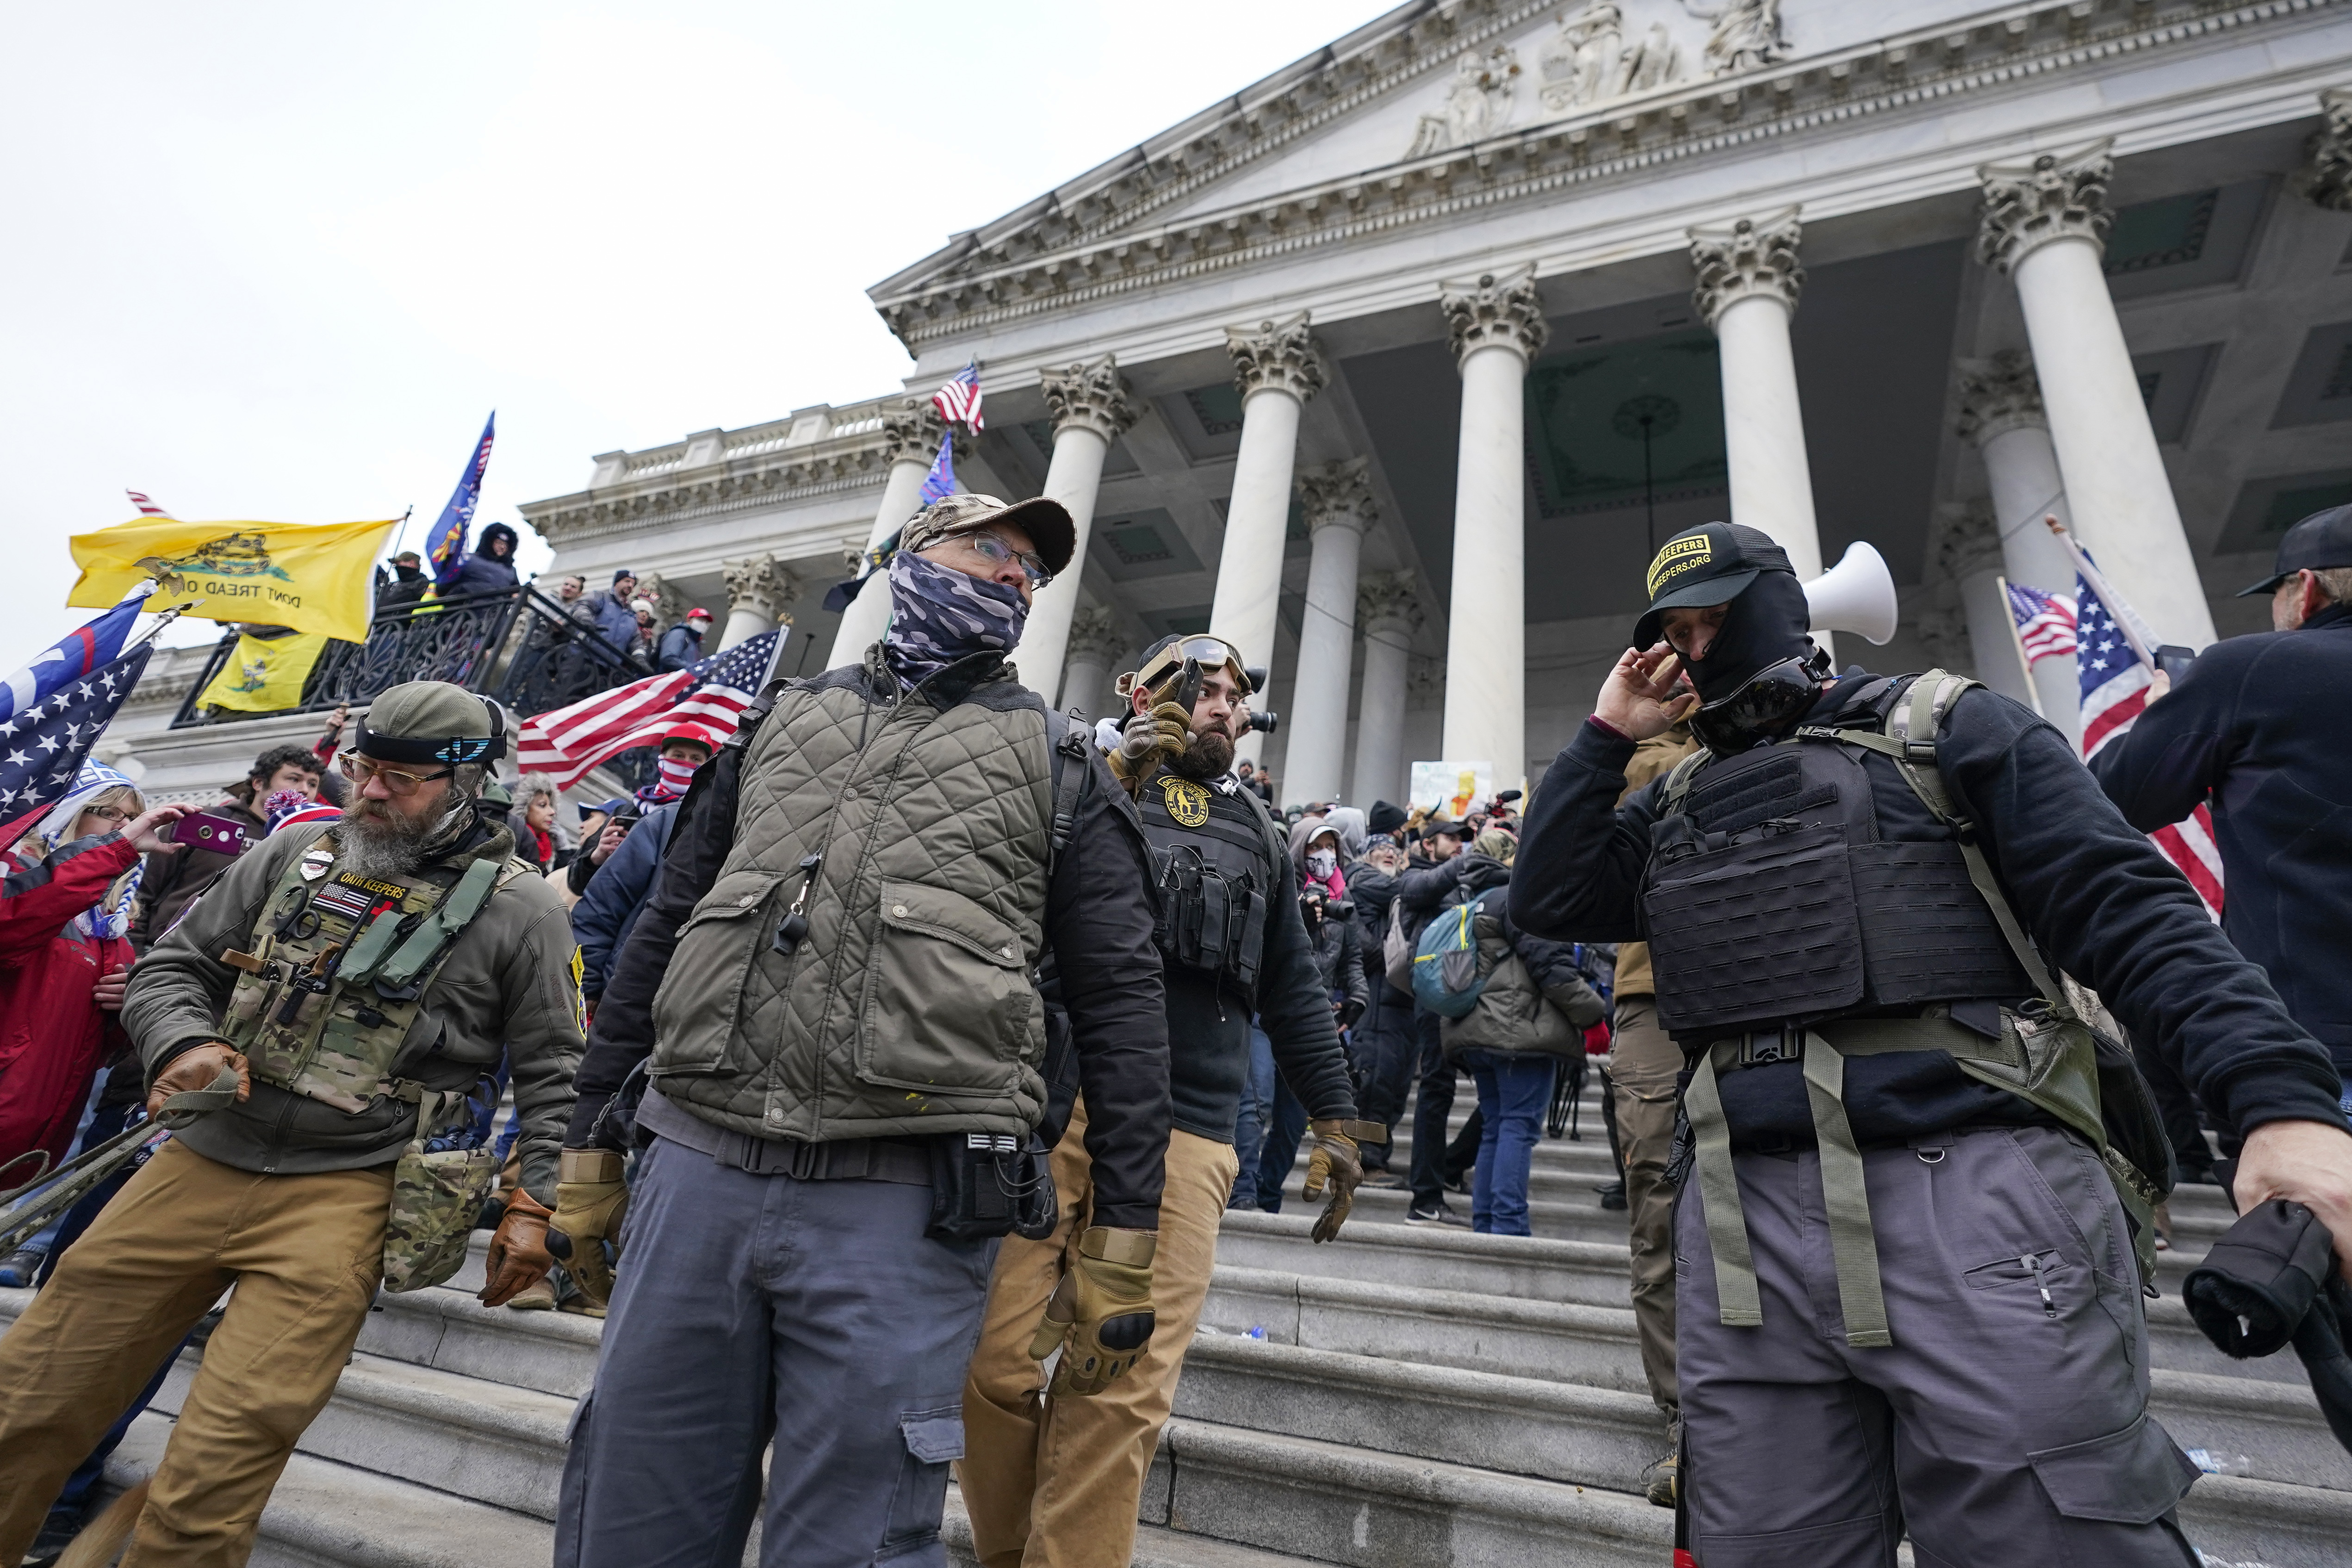 ARCHIVO- Integrantes del grupo extremista Oath Keepers se mantienen frente al Capitolio de Estados Unidos, el 6 de enero de 2021, en Washington. (AP Foto/Manuel Balce Ceneta, archivo)